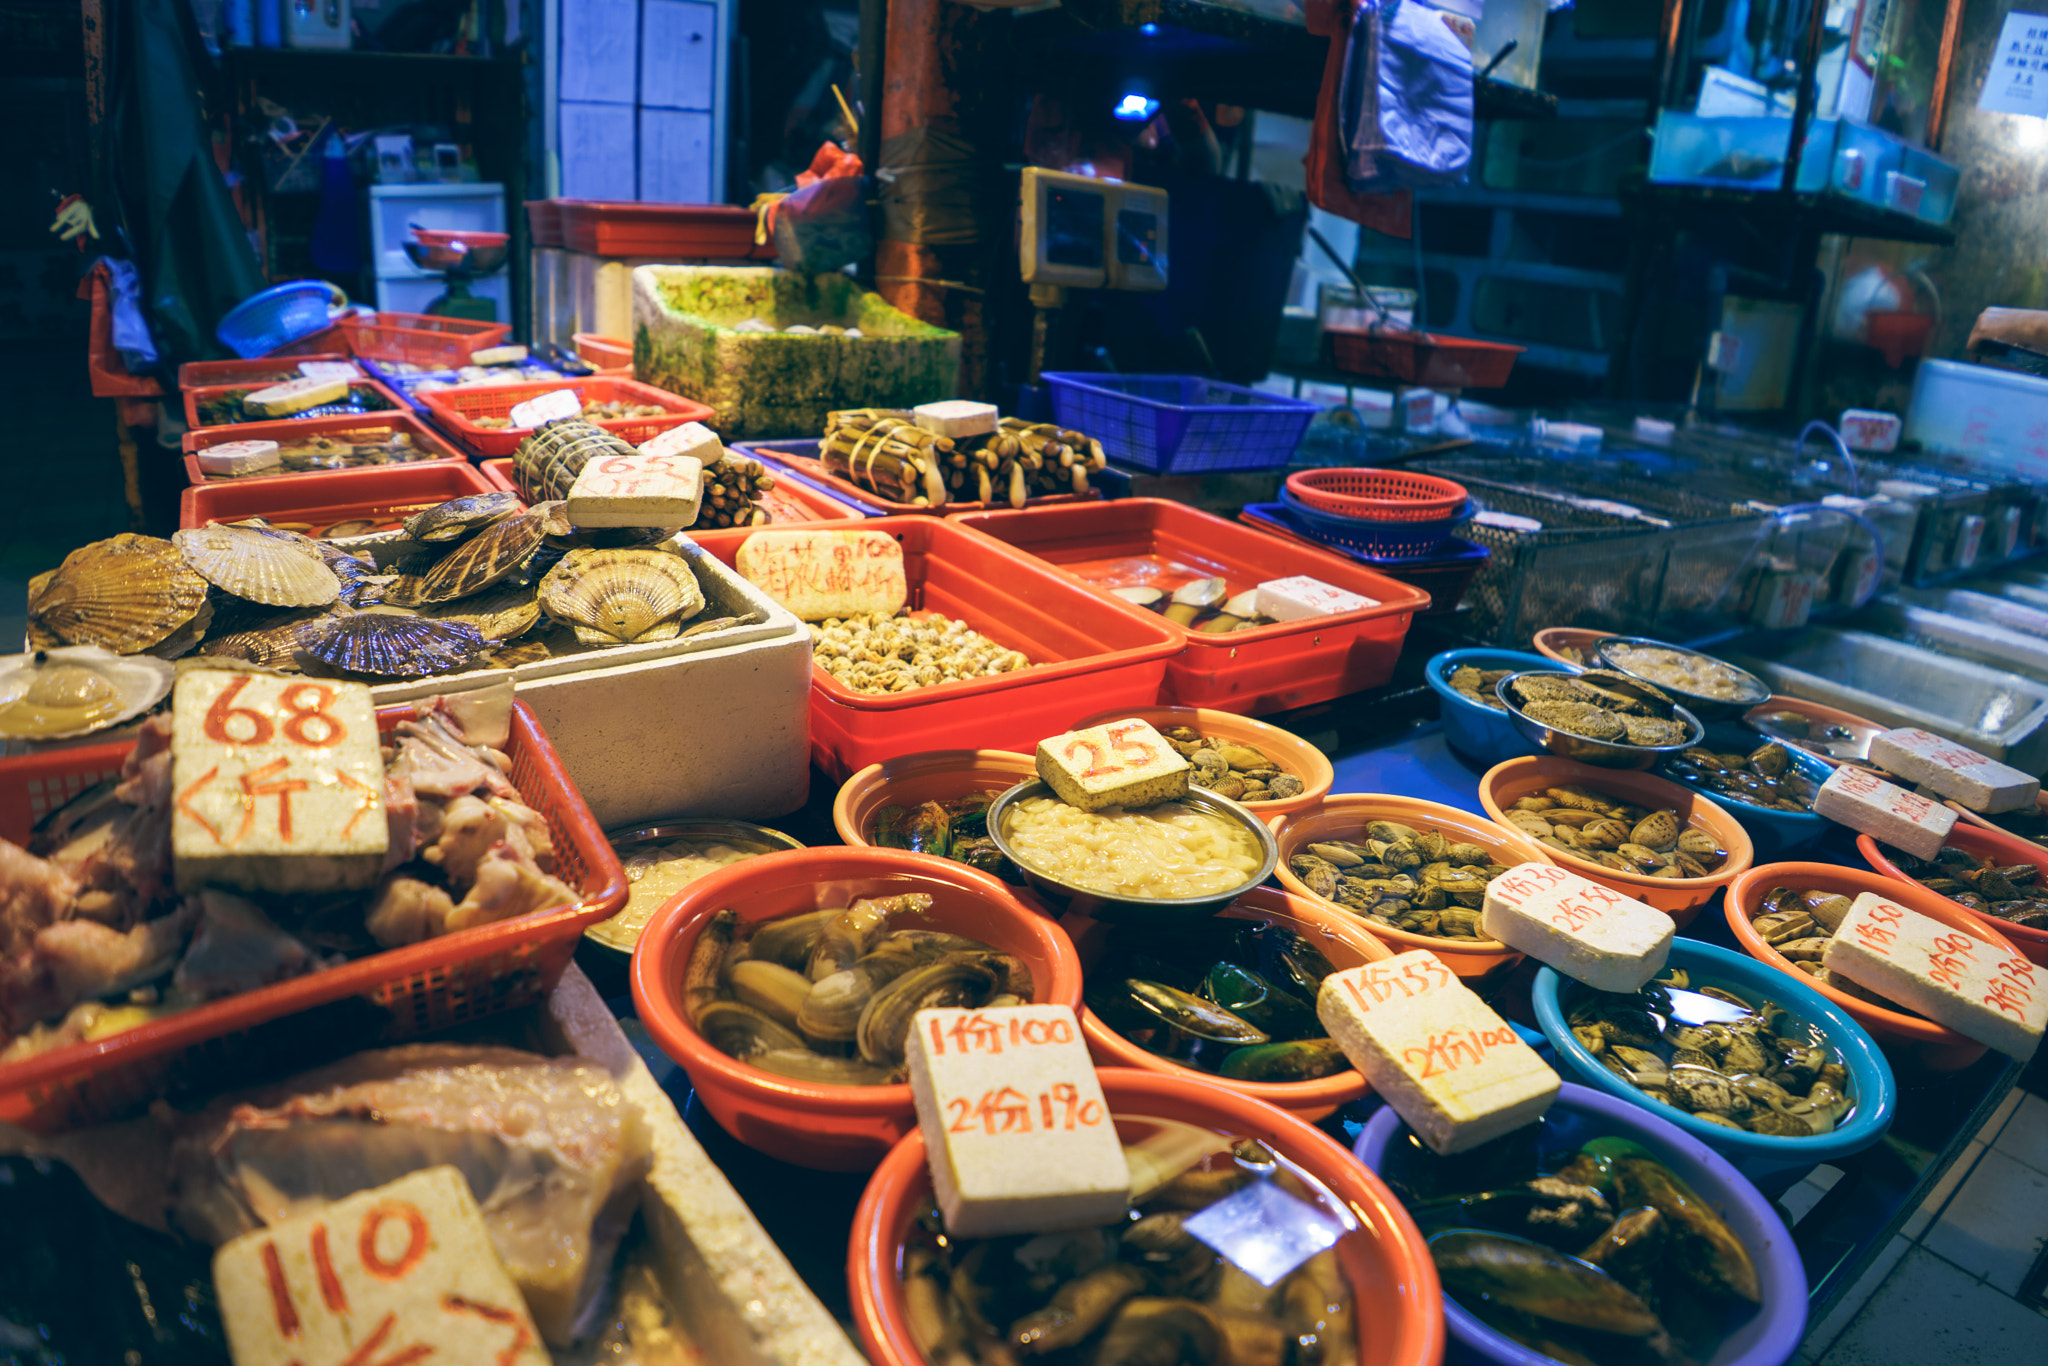 FE 21mm F2.8 sample photo. Local hong kong fish market photography